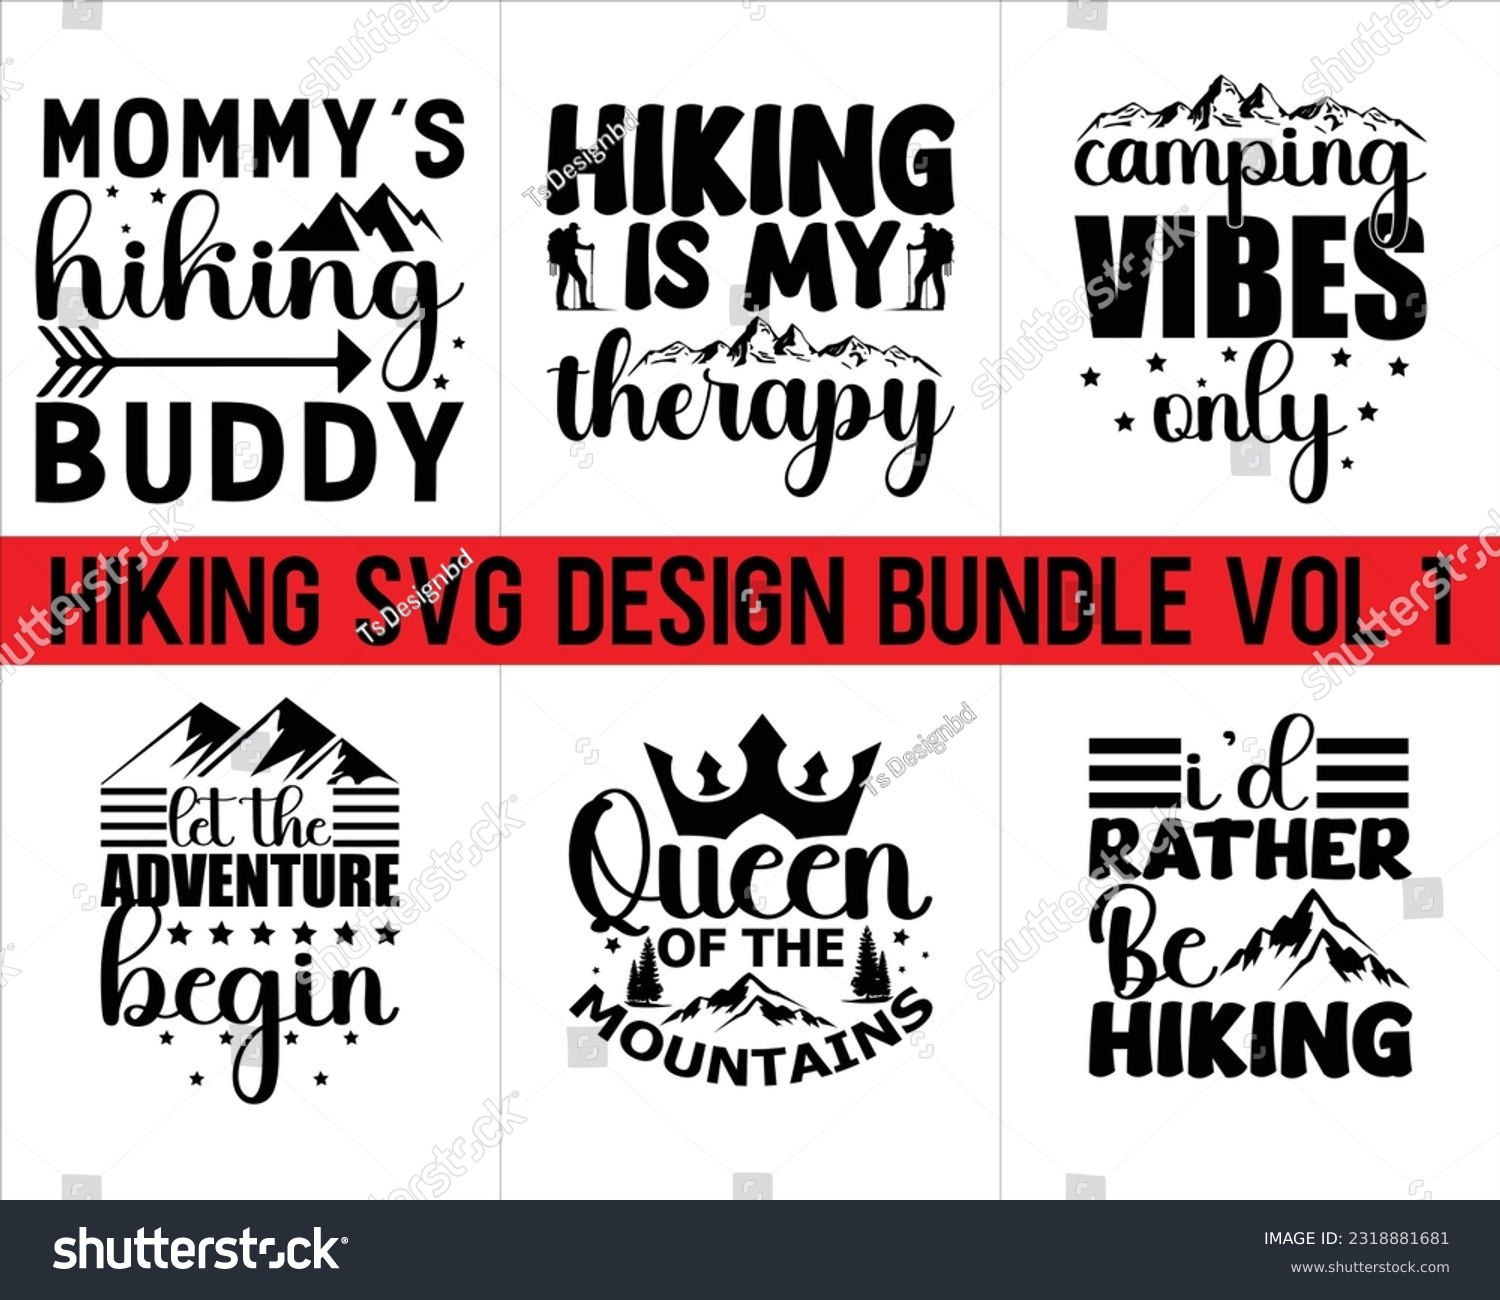 SVG of Hiking Svg Design Bundle Vol 1,Hiking Svg Design, Mountain illustration, outdoor adventure ,Outdoor Adventure Inspiring Motivation Quote,camping shirt, camping, hiking svg